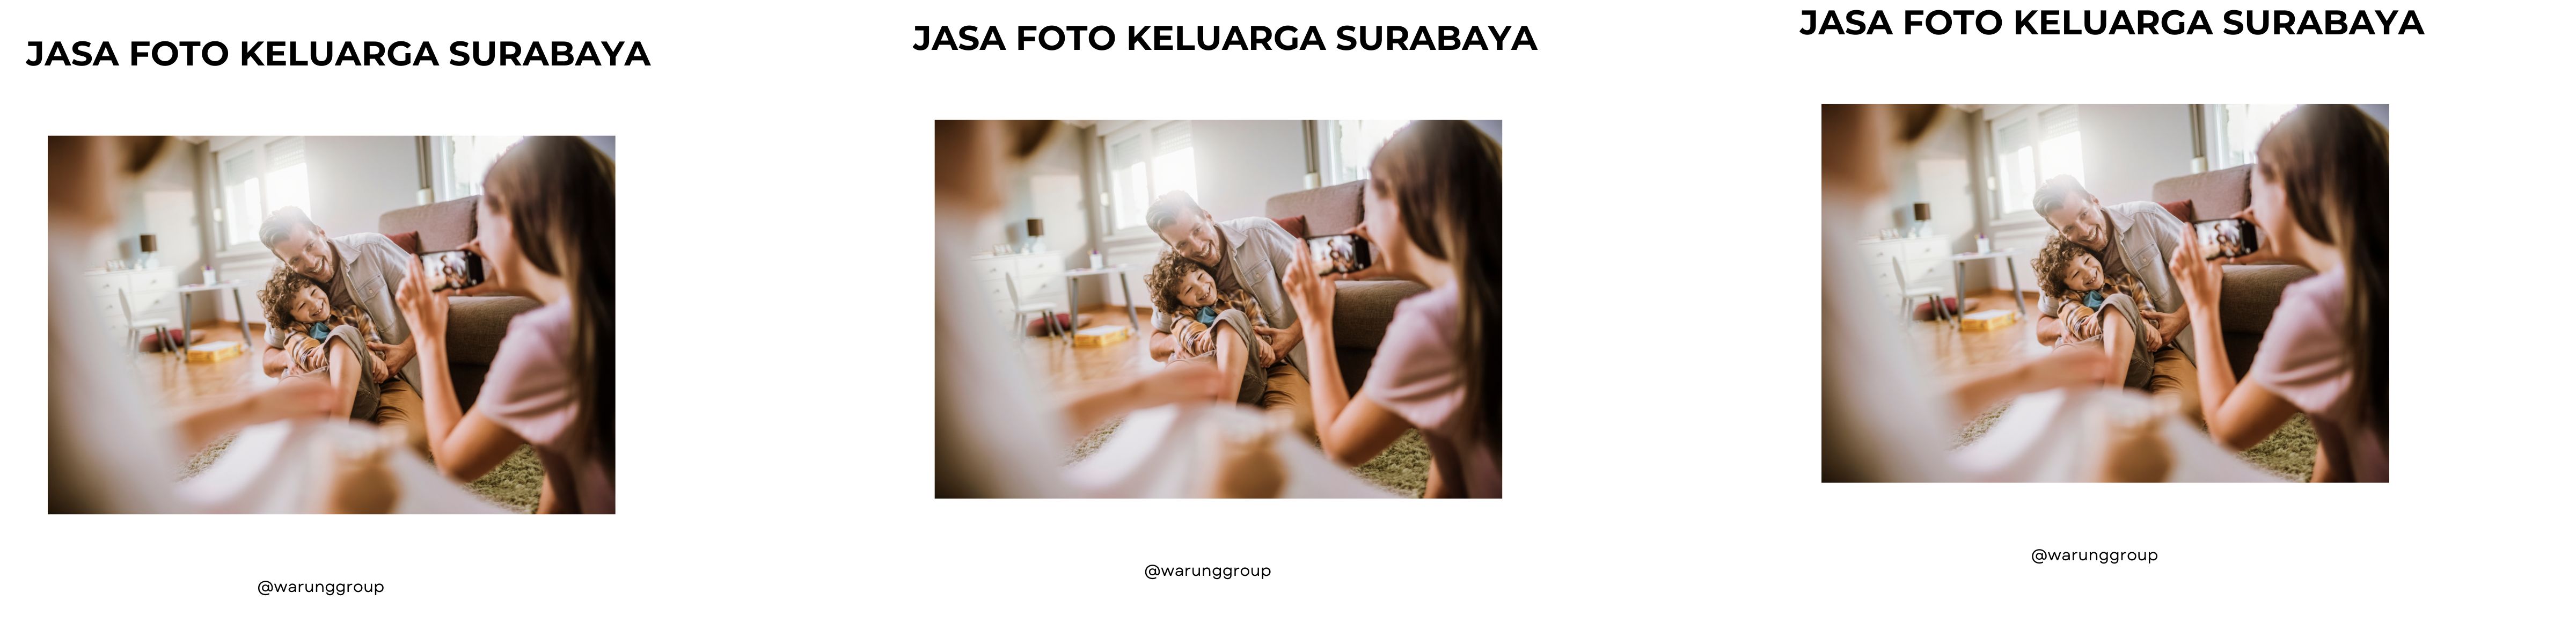 Jasa Foto Keluarga Surabaya